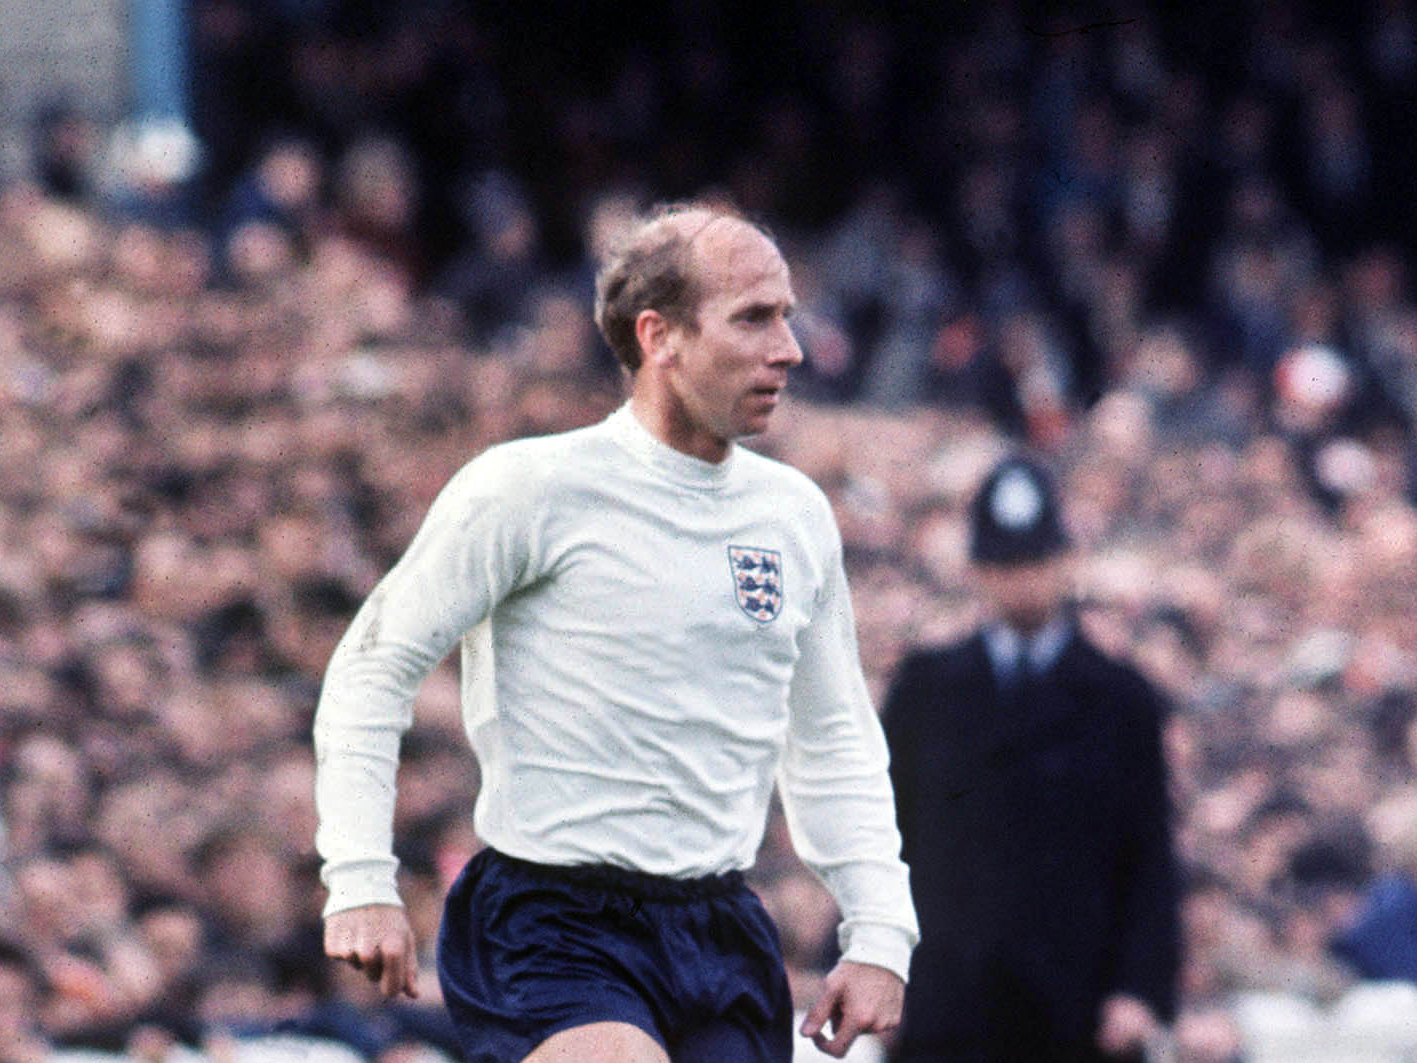 An image of Sir Bobby Charlton playing for England